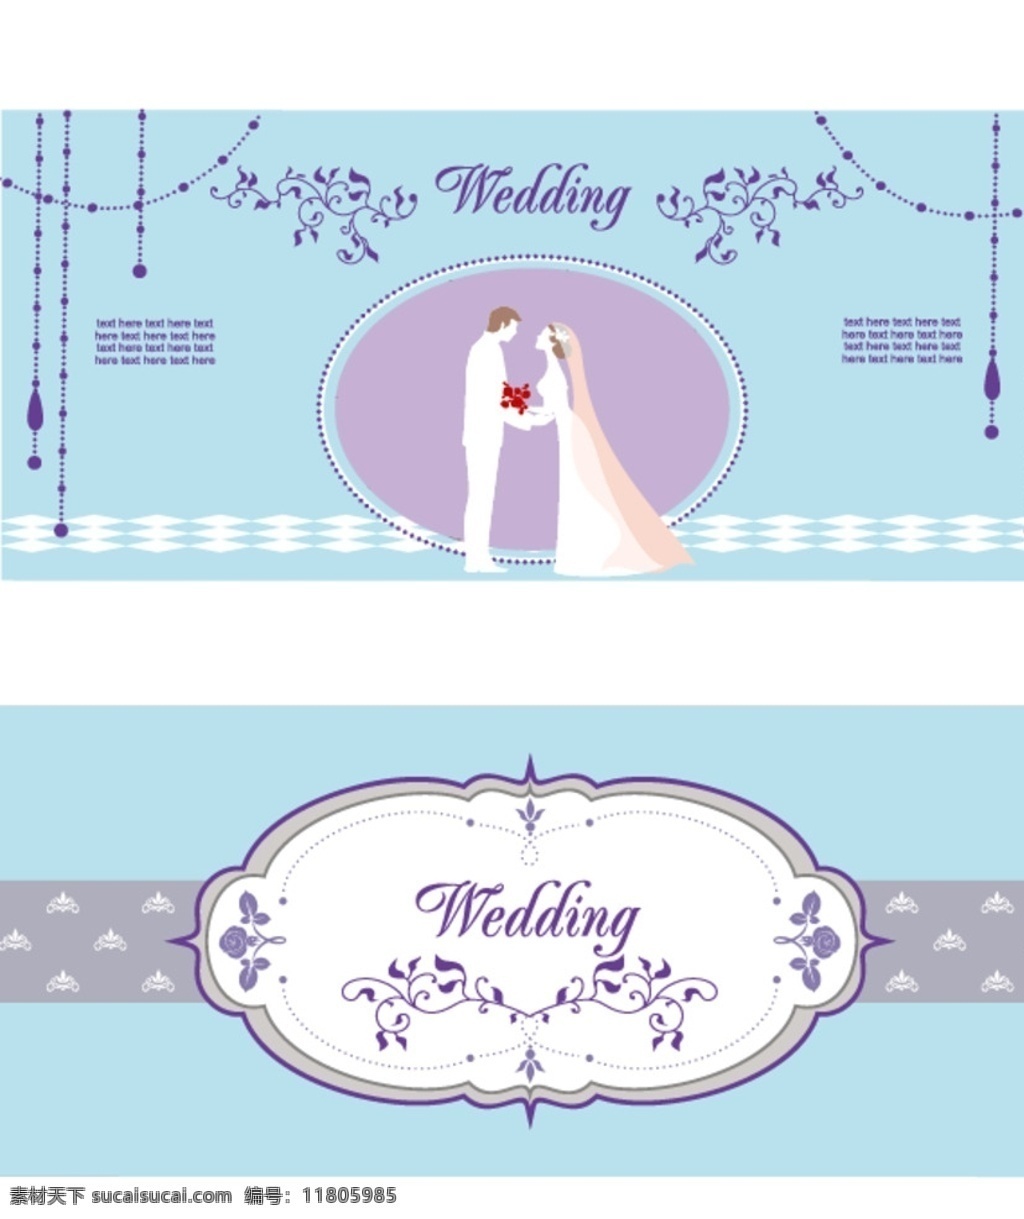 蓝紫色 清新 韩式 婚礼 背景 蓝色 紫色 浪漫 婚庆 矢量图 分层 珠帘 新人